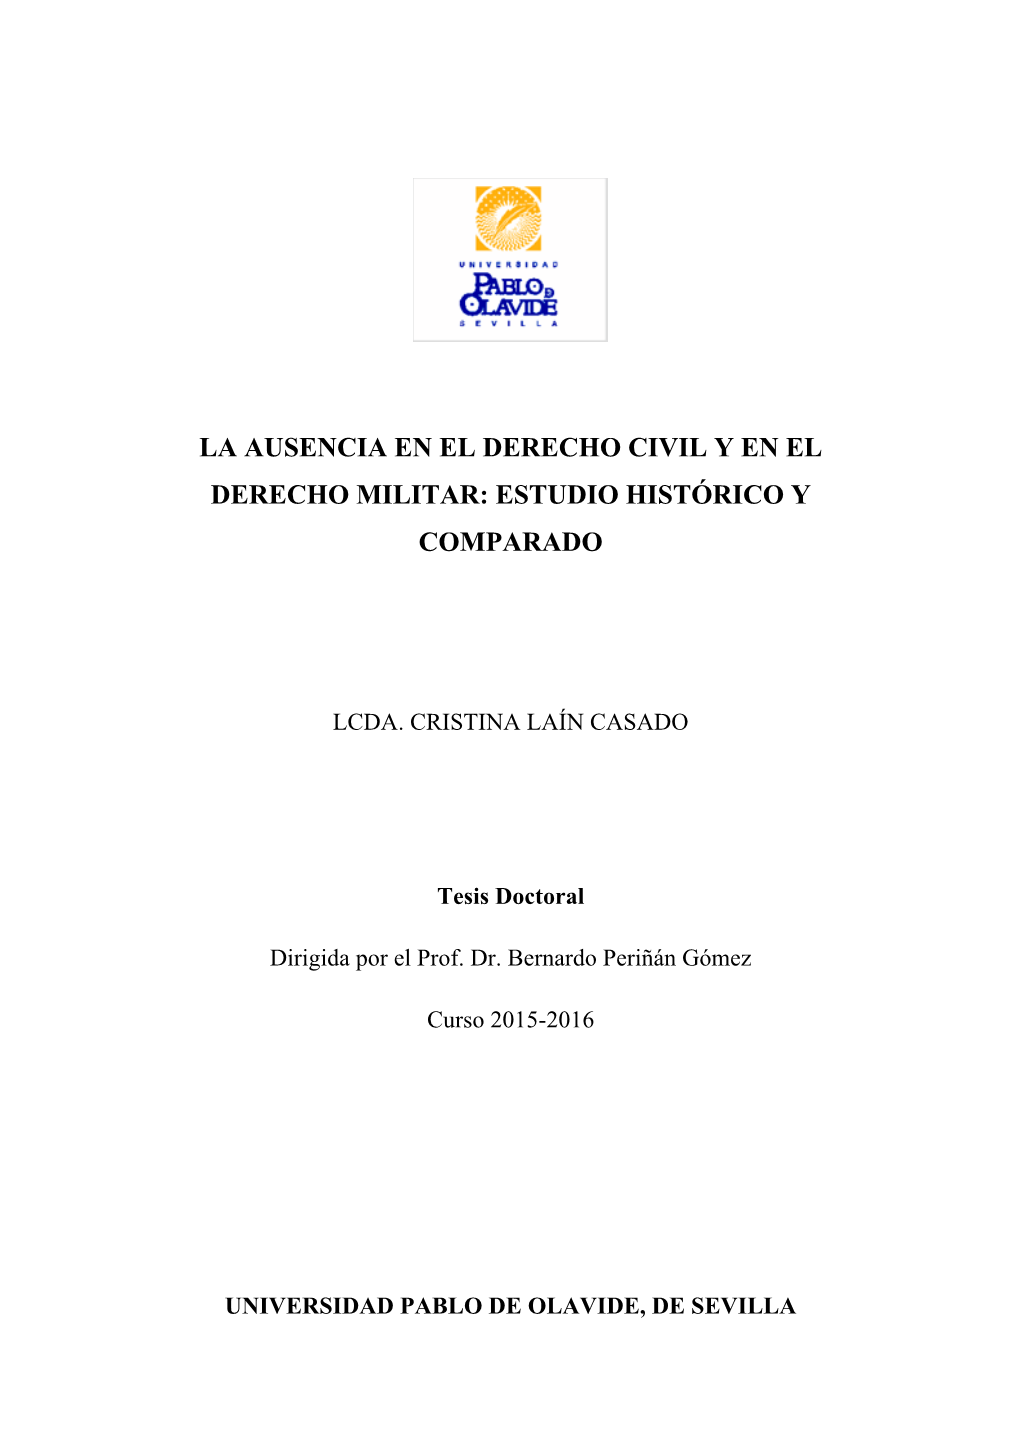 La Ausencia En El Derecho Civil Y En El Derecho Militar: Estudio Histórico Y Comparado